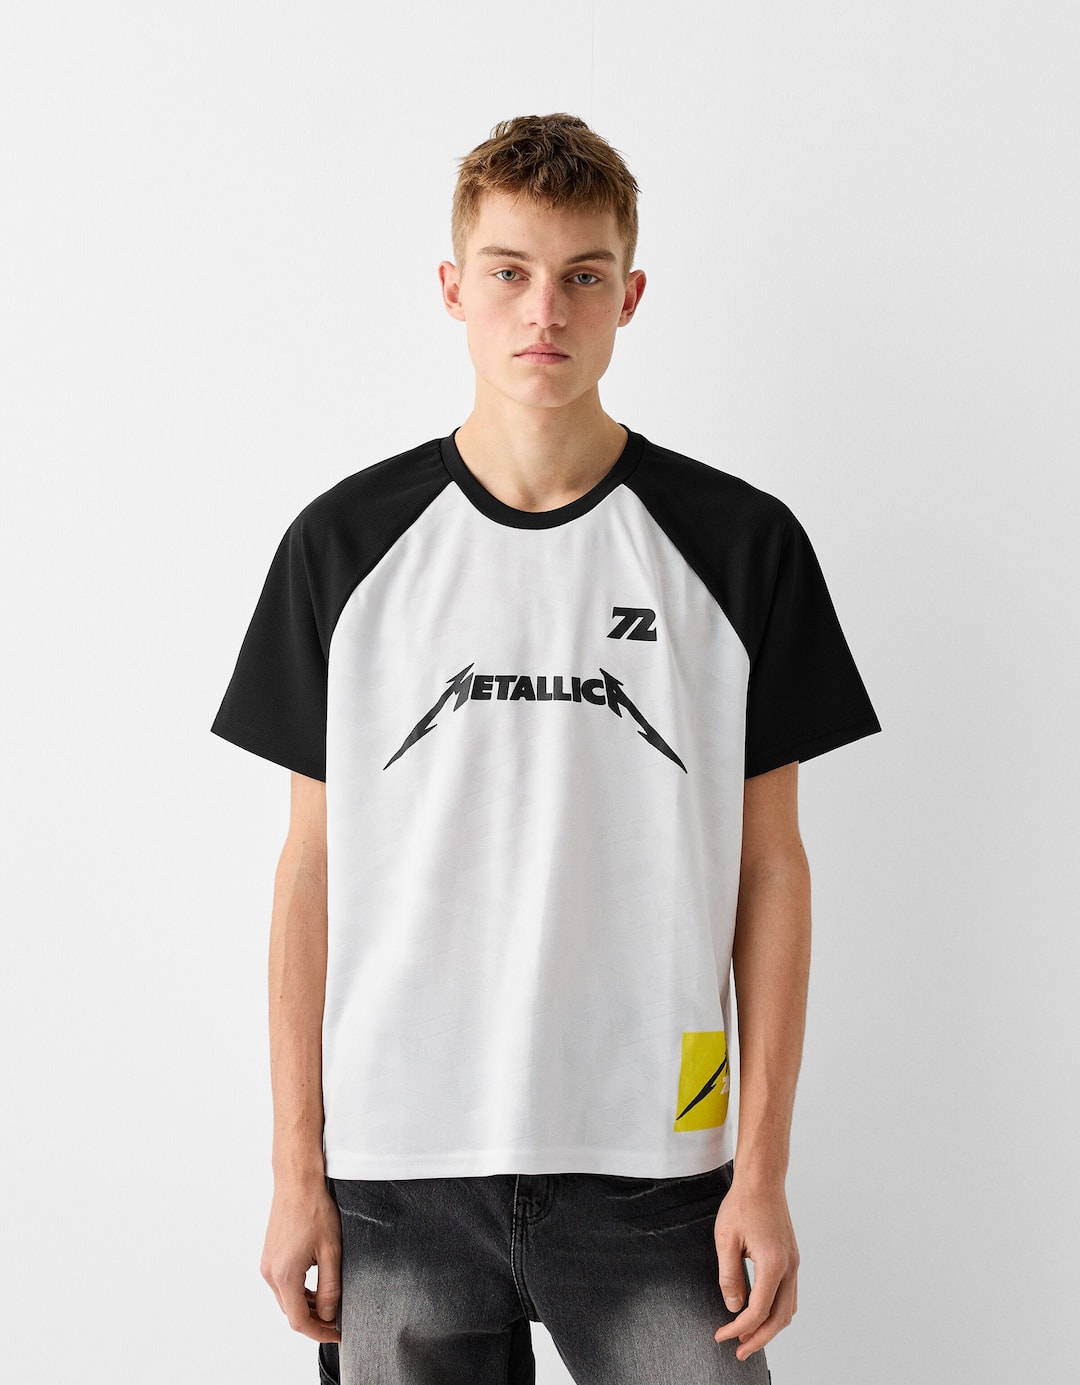 Kaus bergambar teknis lengan pendek Metallica